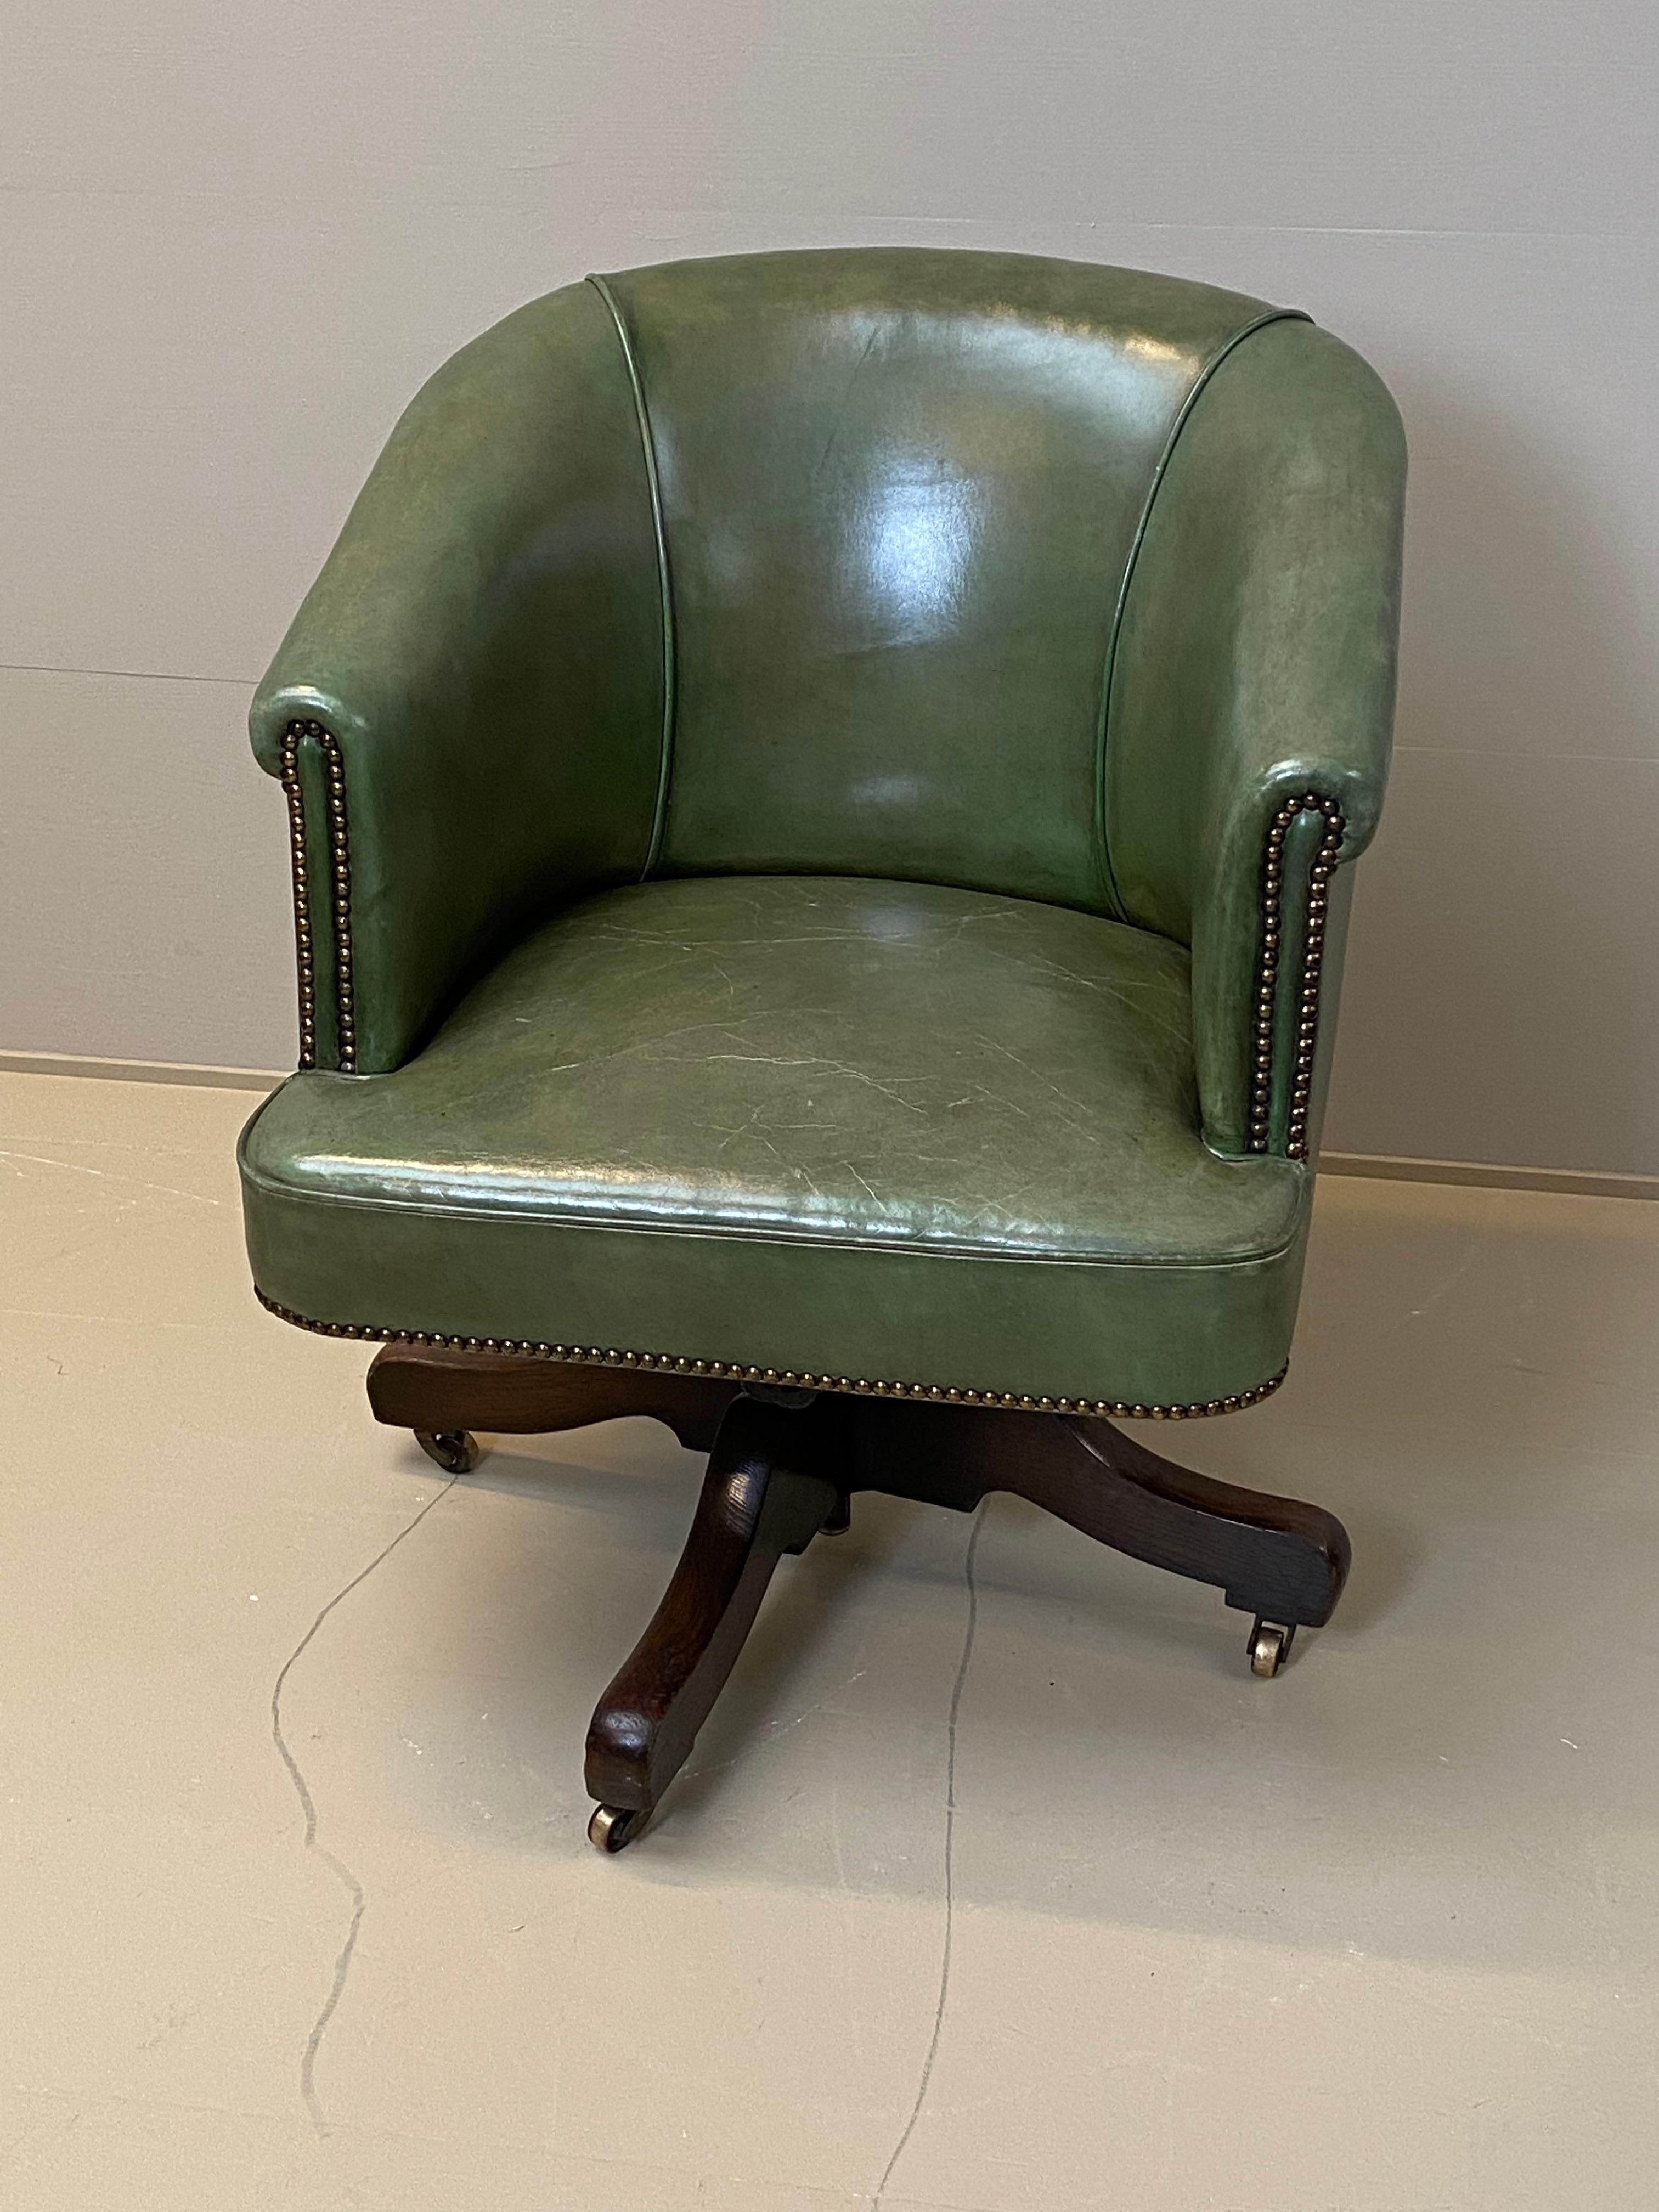 Belle chaise de bureau anglaise patinée,
Mécanisme de rotation,
Beau cuir vert patiné.